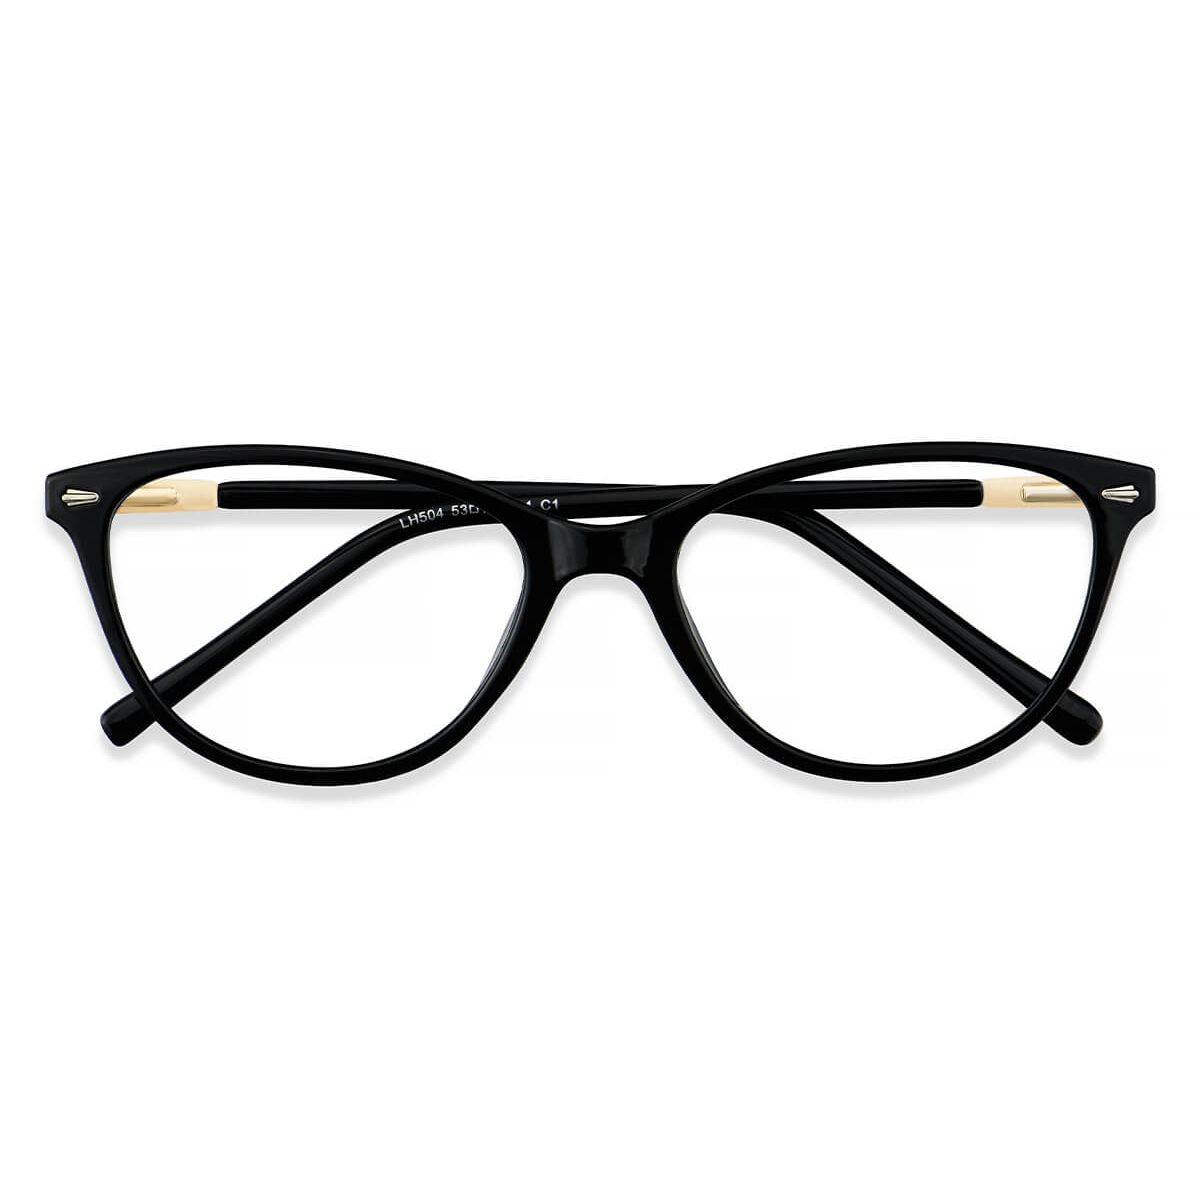 Lh504 Oval Cat Eye Wayfarer Black Eyeglasses Frames Leoptique